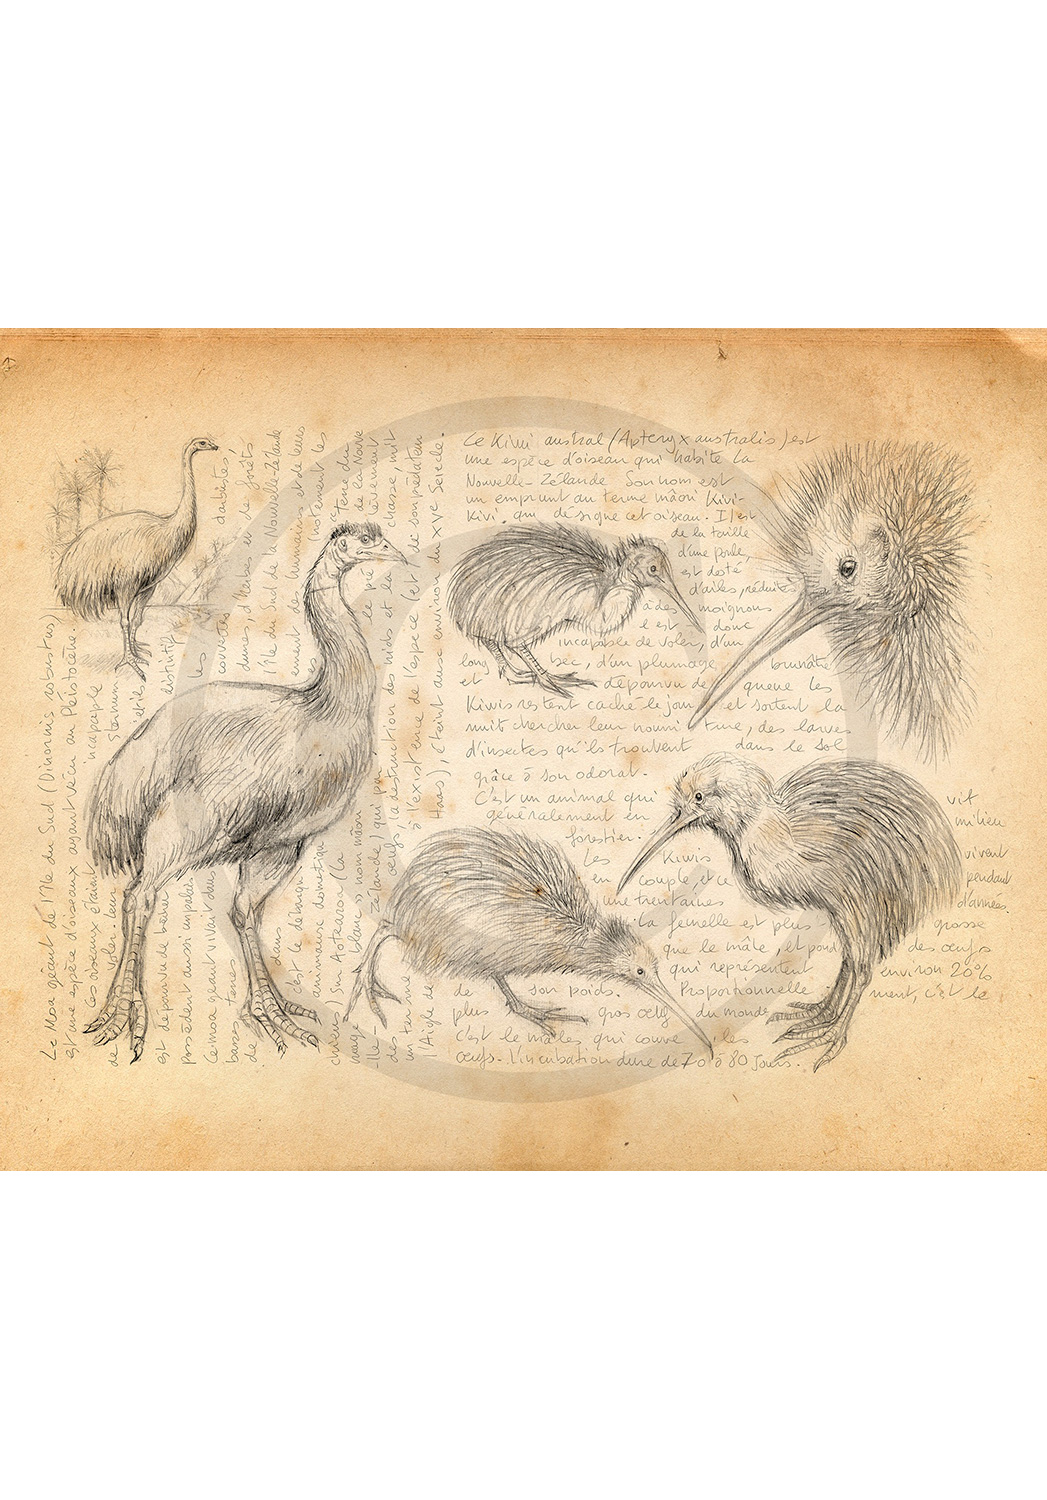 Marcello-art : Ornithologie 375 - Moa et kiwi